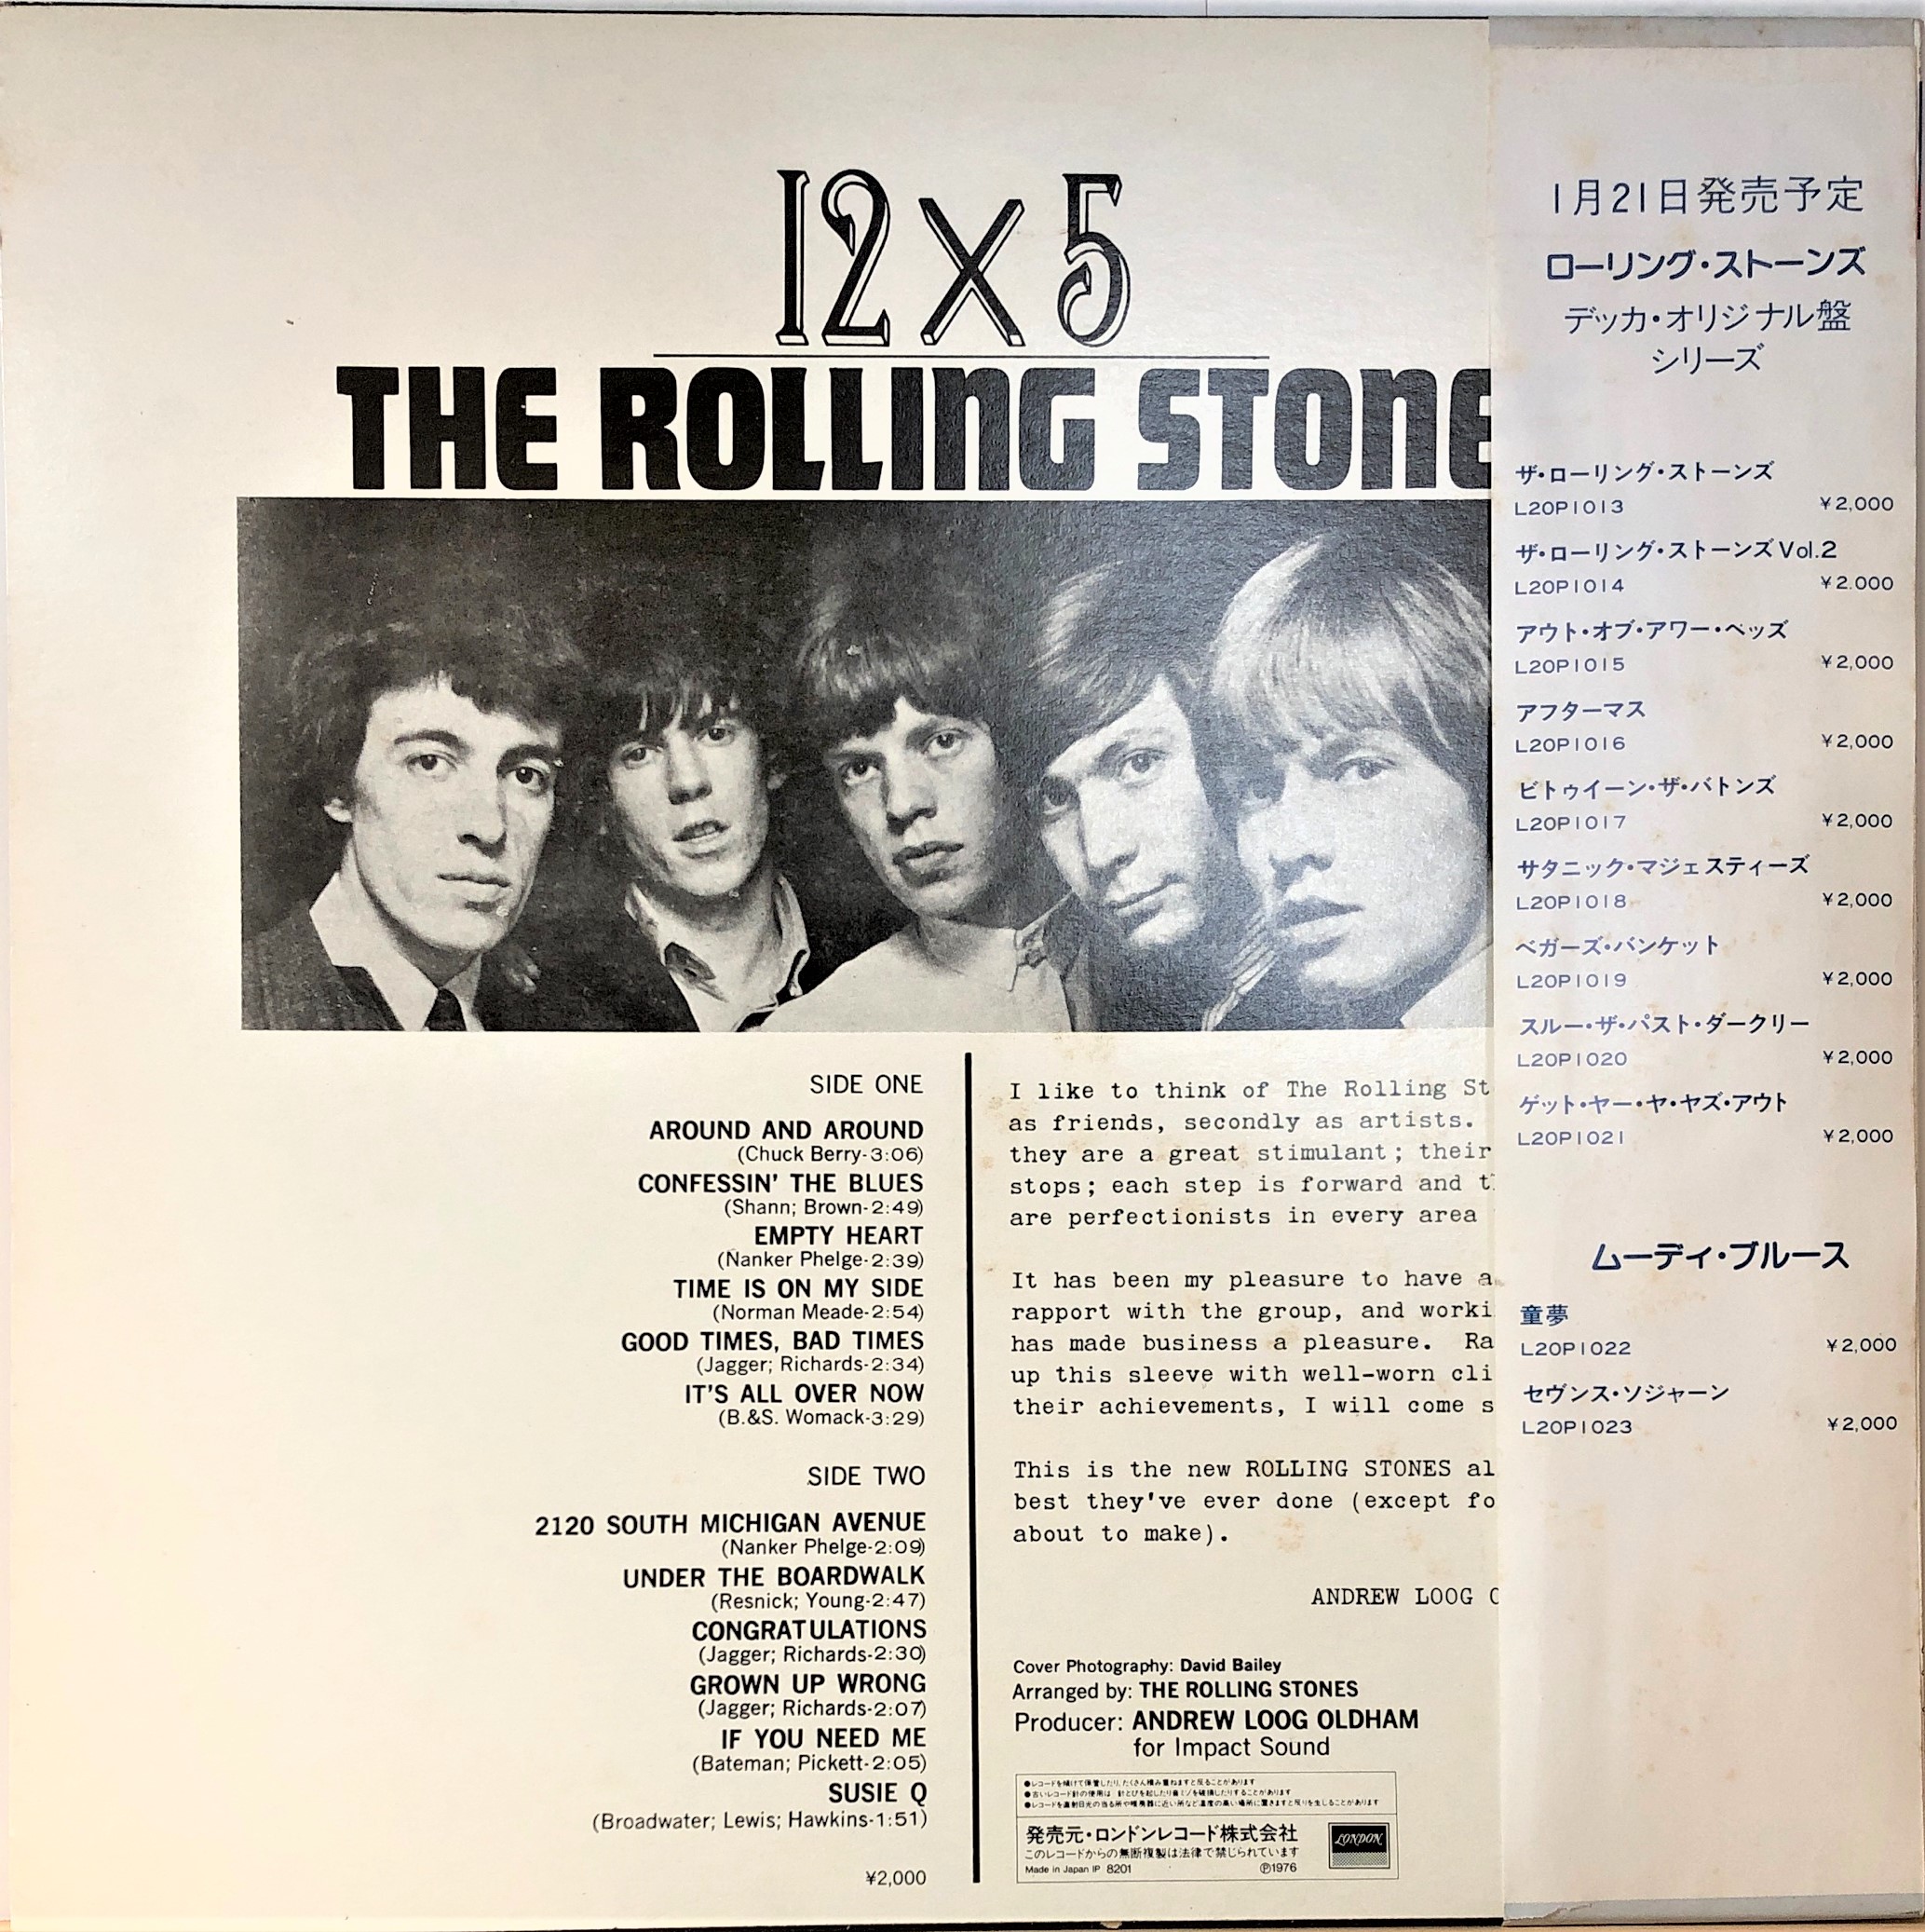 The Rolling Stones ‎– 12 X 5 | 中古レコード通販・買取のアカル